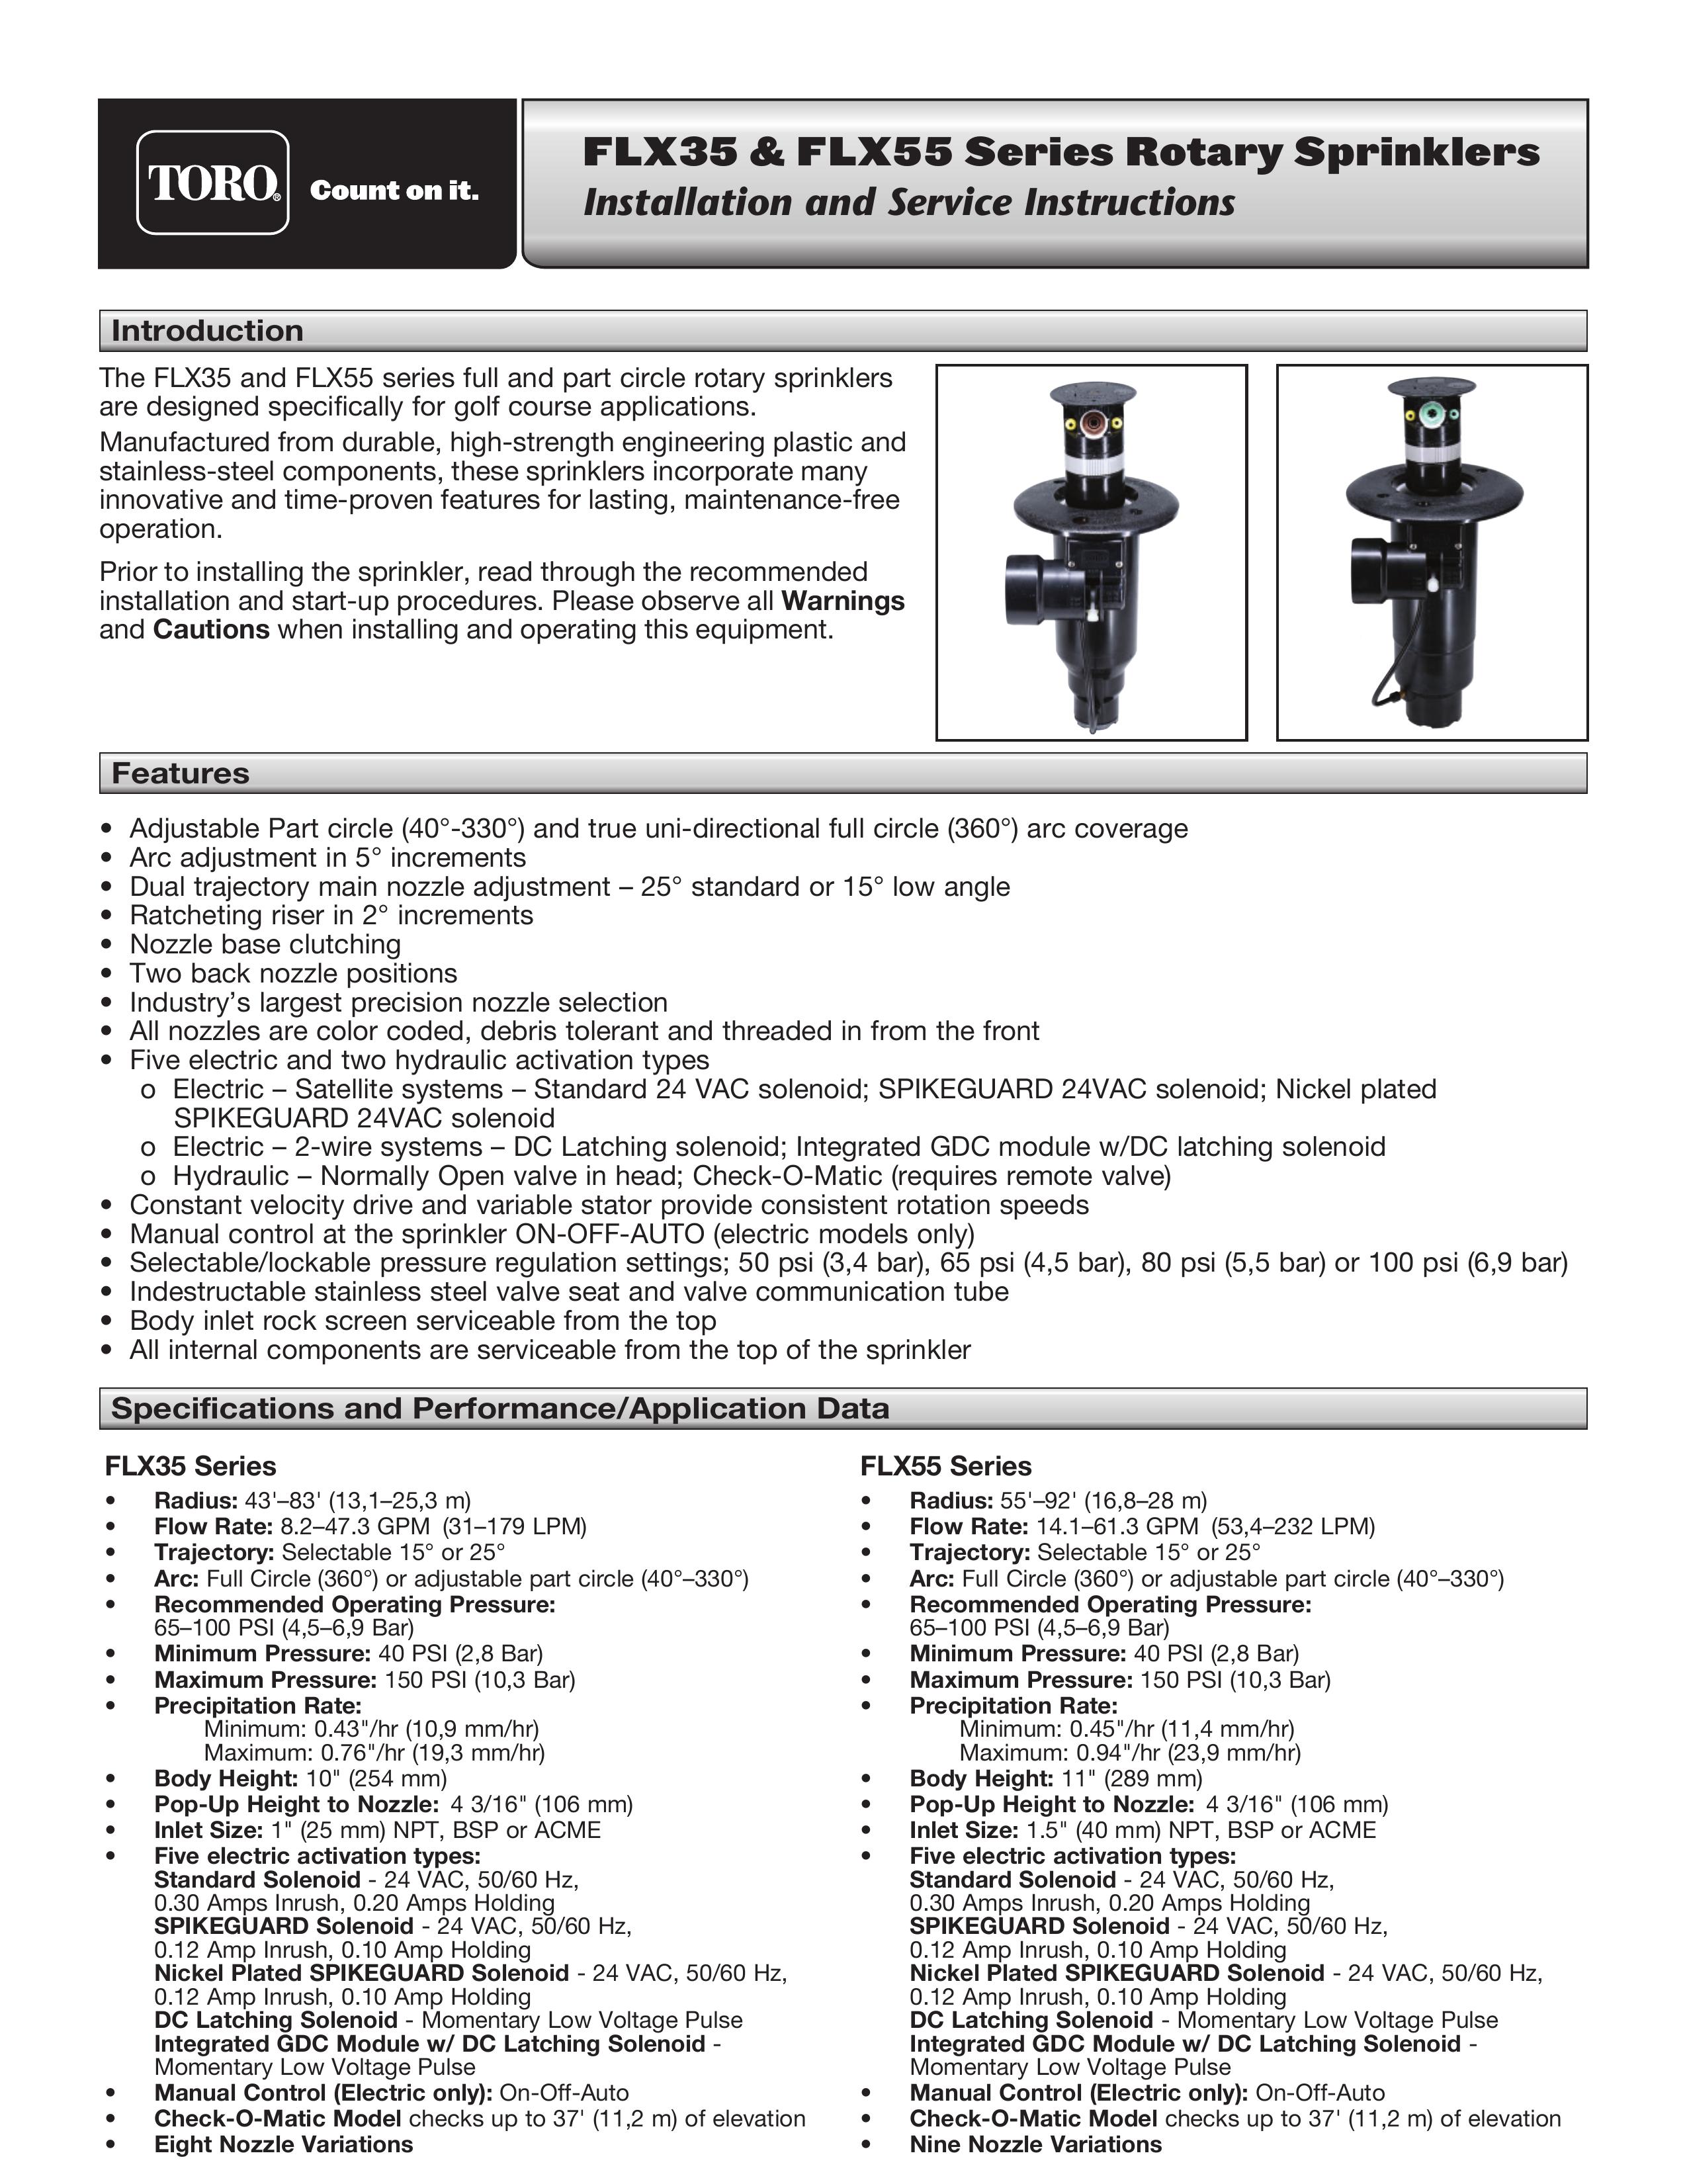 Toro FLX35 Sprinkler User Manual